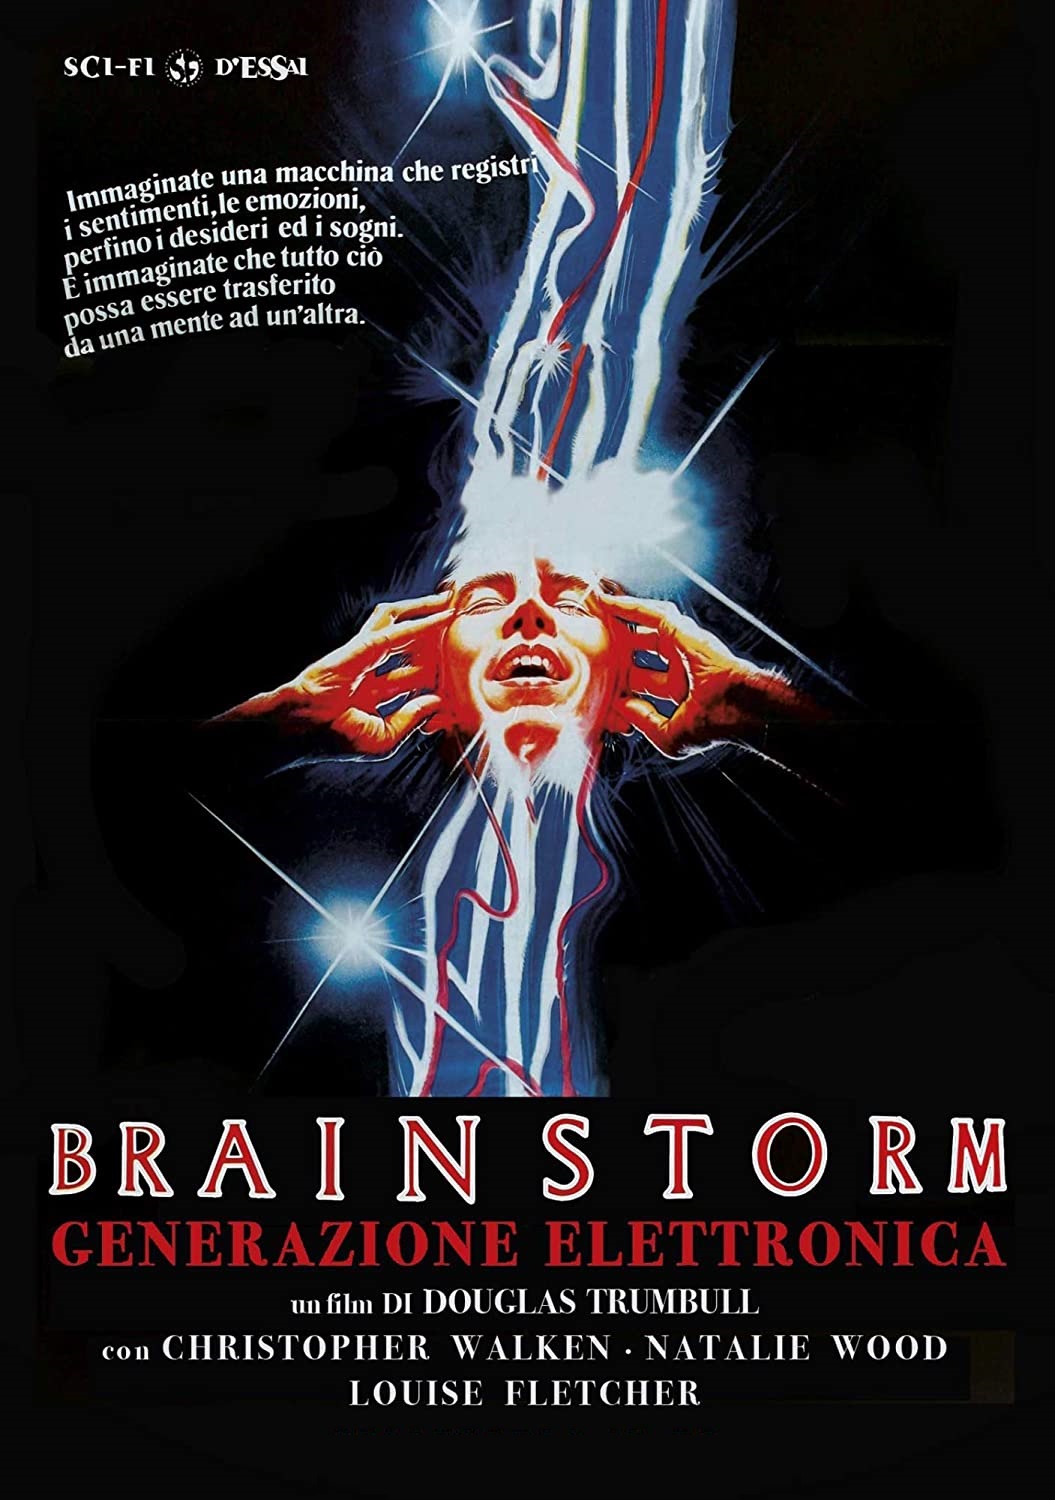 Brainstorm – Generazione elettronica (1983)